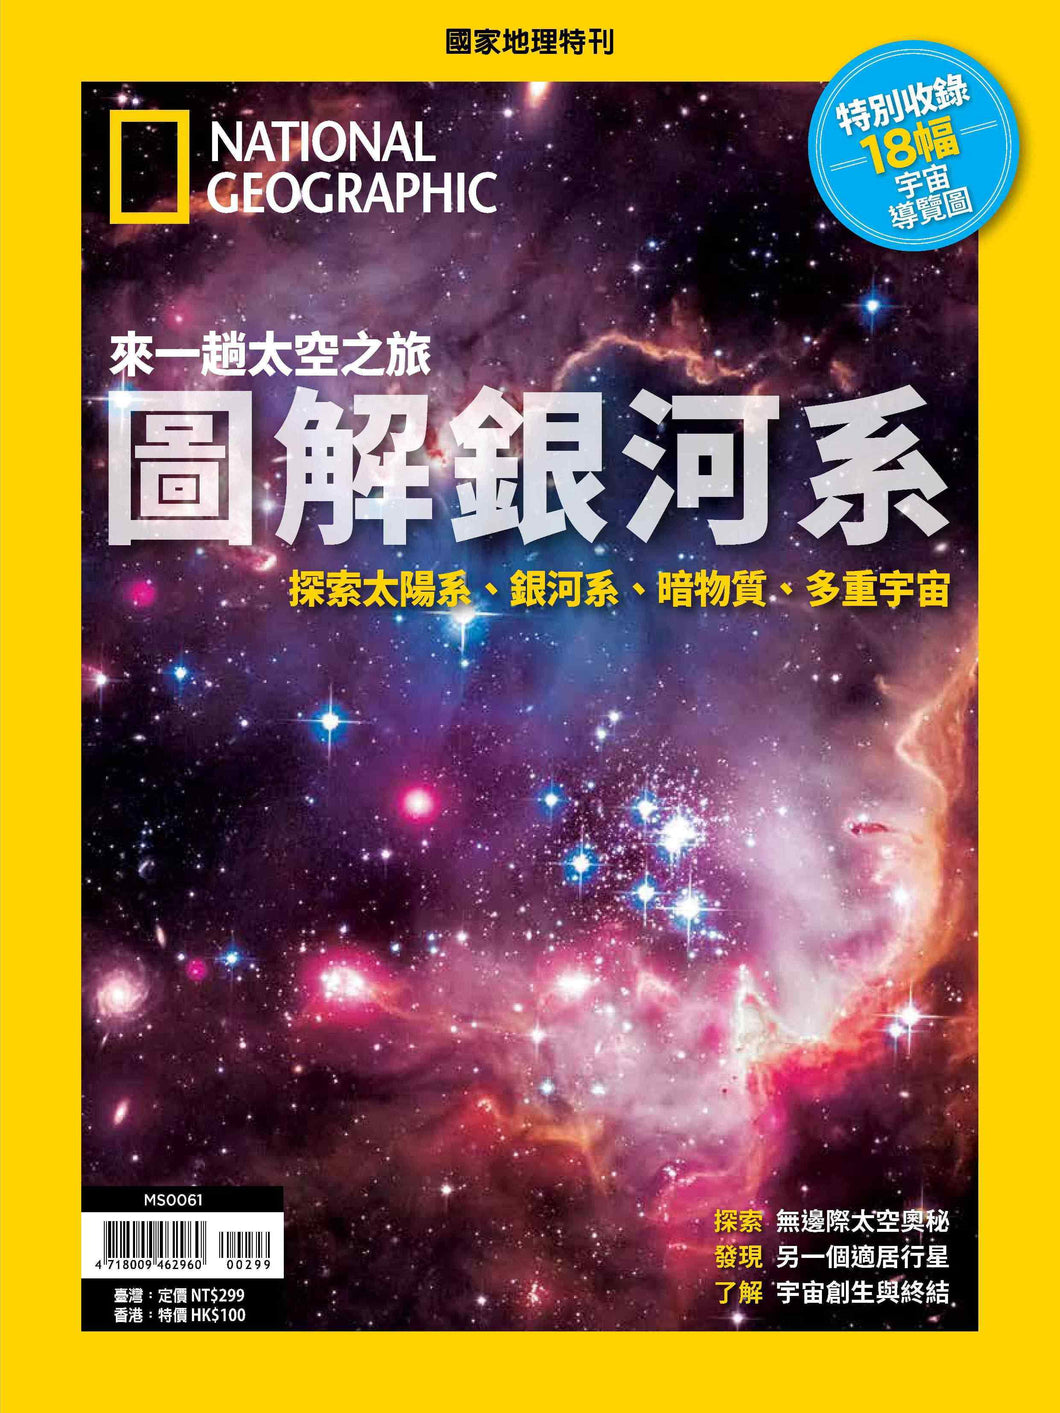 國家地理雜誌 中文版 紙本 訂閱 1年12期 合購 《圖解銀河系》特刊